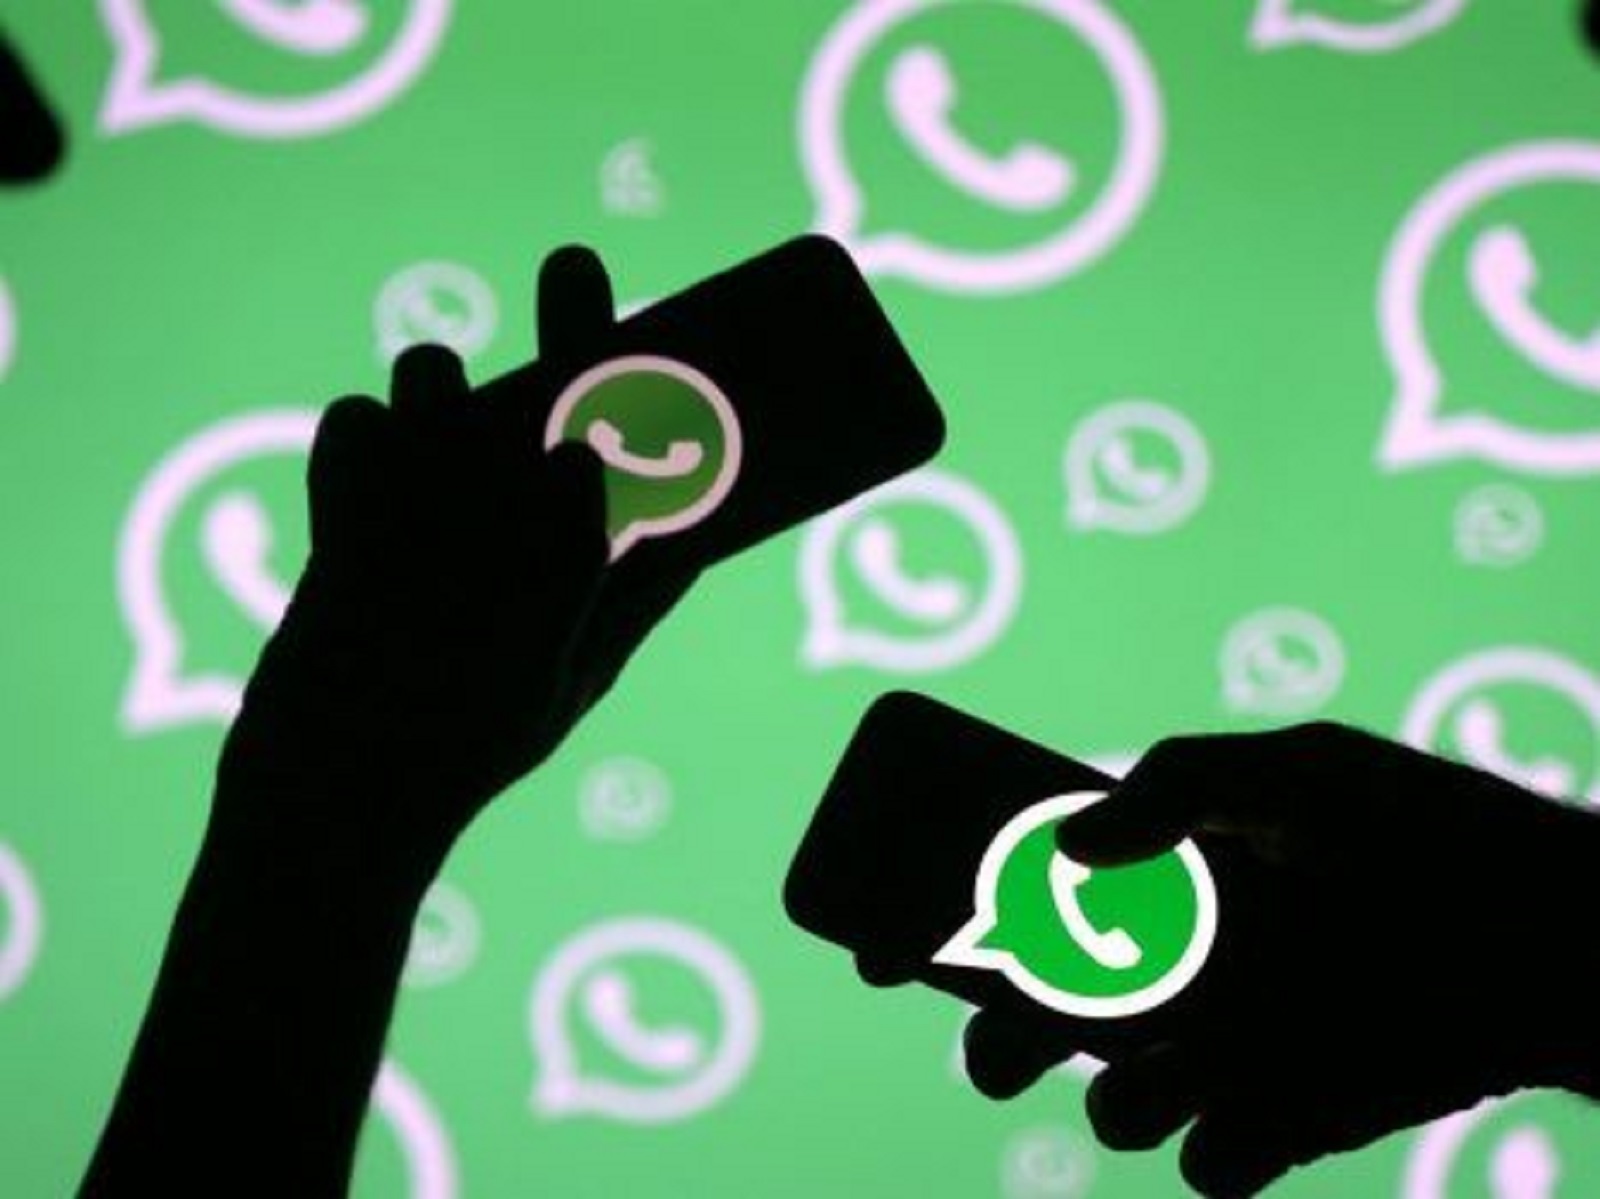 Download Social Spy WhatsApp Versi Terbaru: Mampu Lacak WA Pasangan dengan Cepat Tanpa Ketahuan